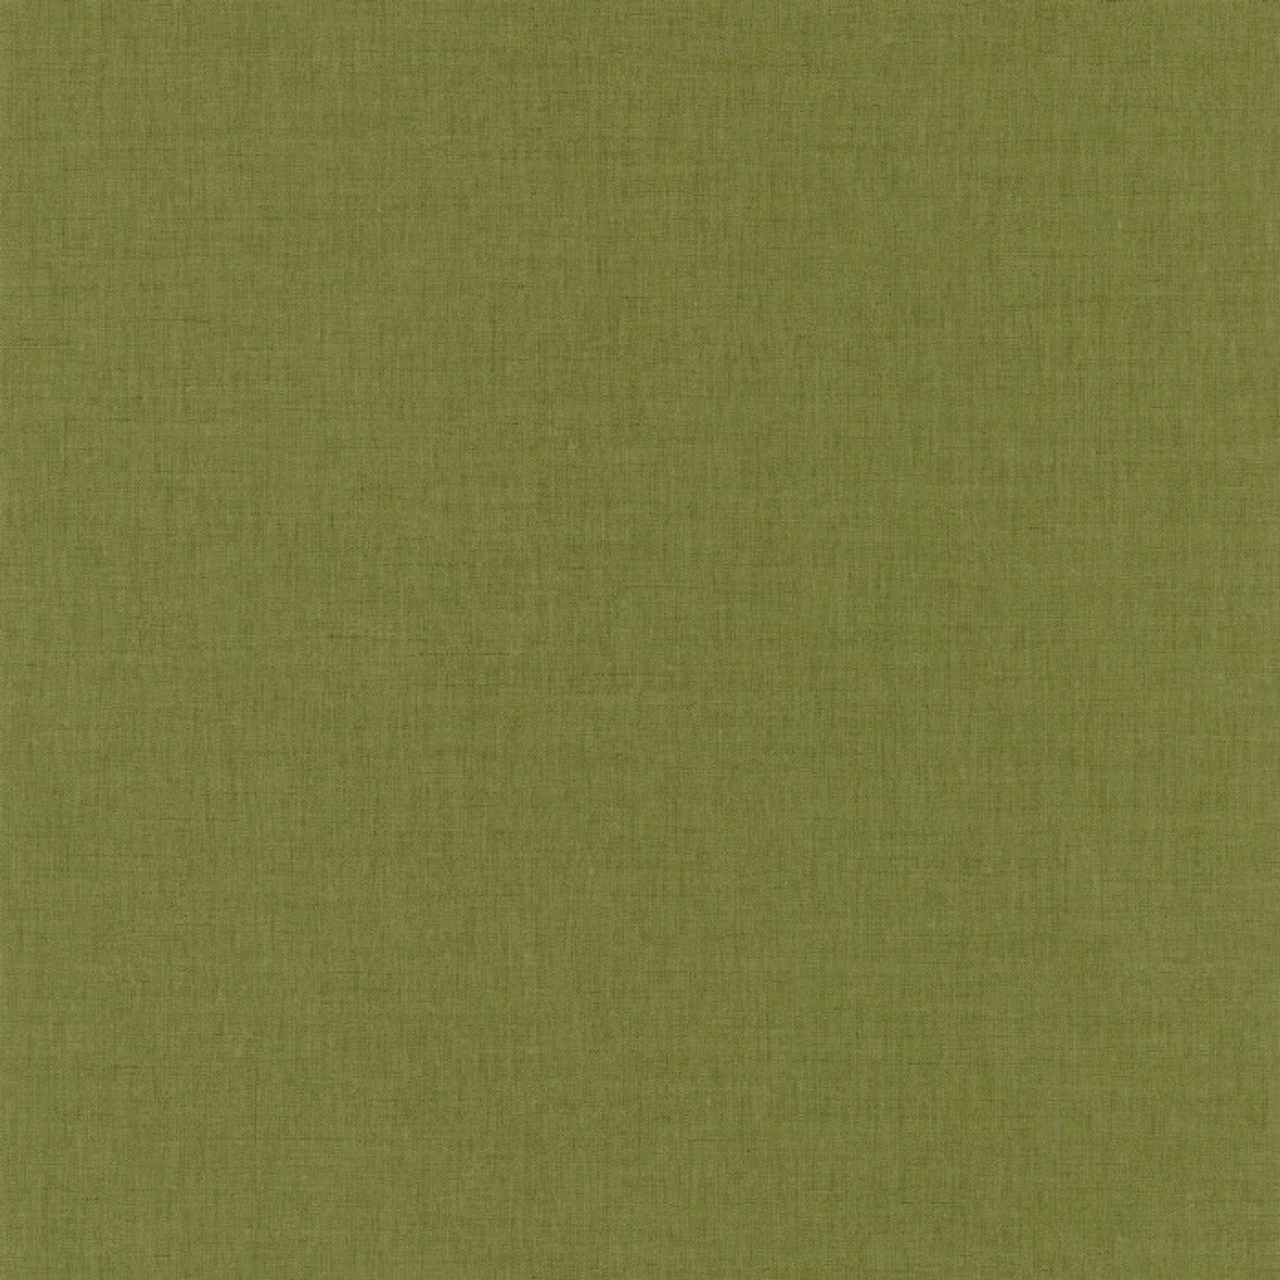 Desig tapéta zöldes színben textilhatású struktúrával mosható vinyl